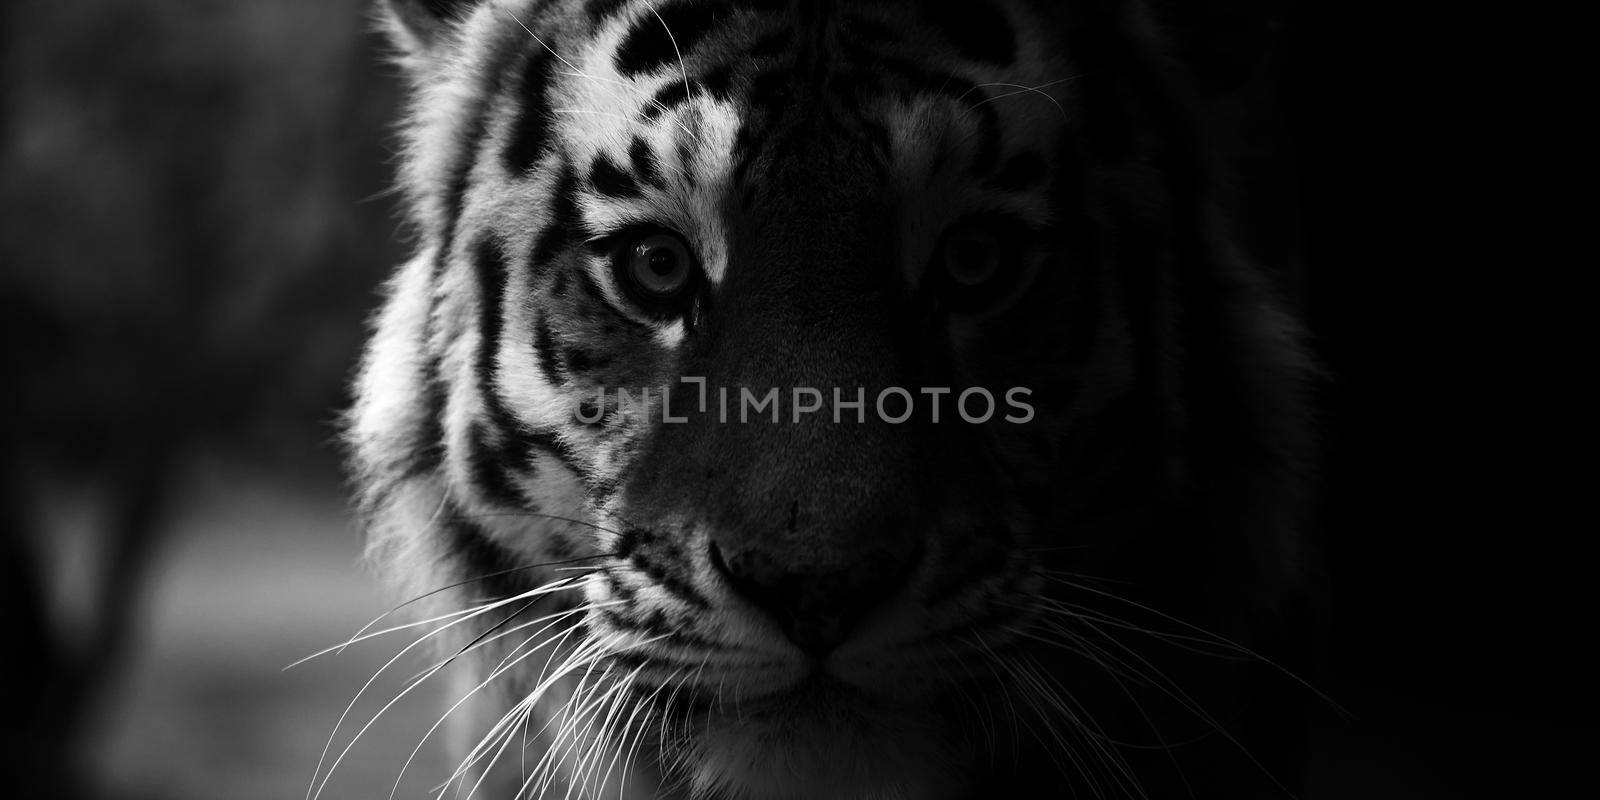 Portrait of a beautiful tiger. Big cat close-up. Tiger looks at you, portrait of a tiger. Portrait of a big cat by EvgeniyQW